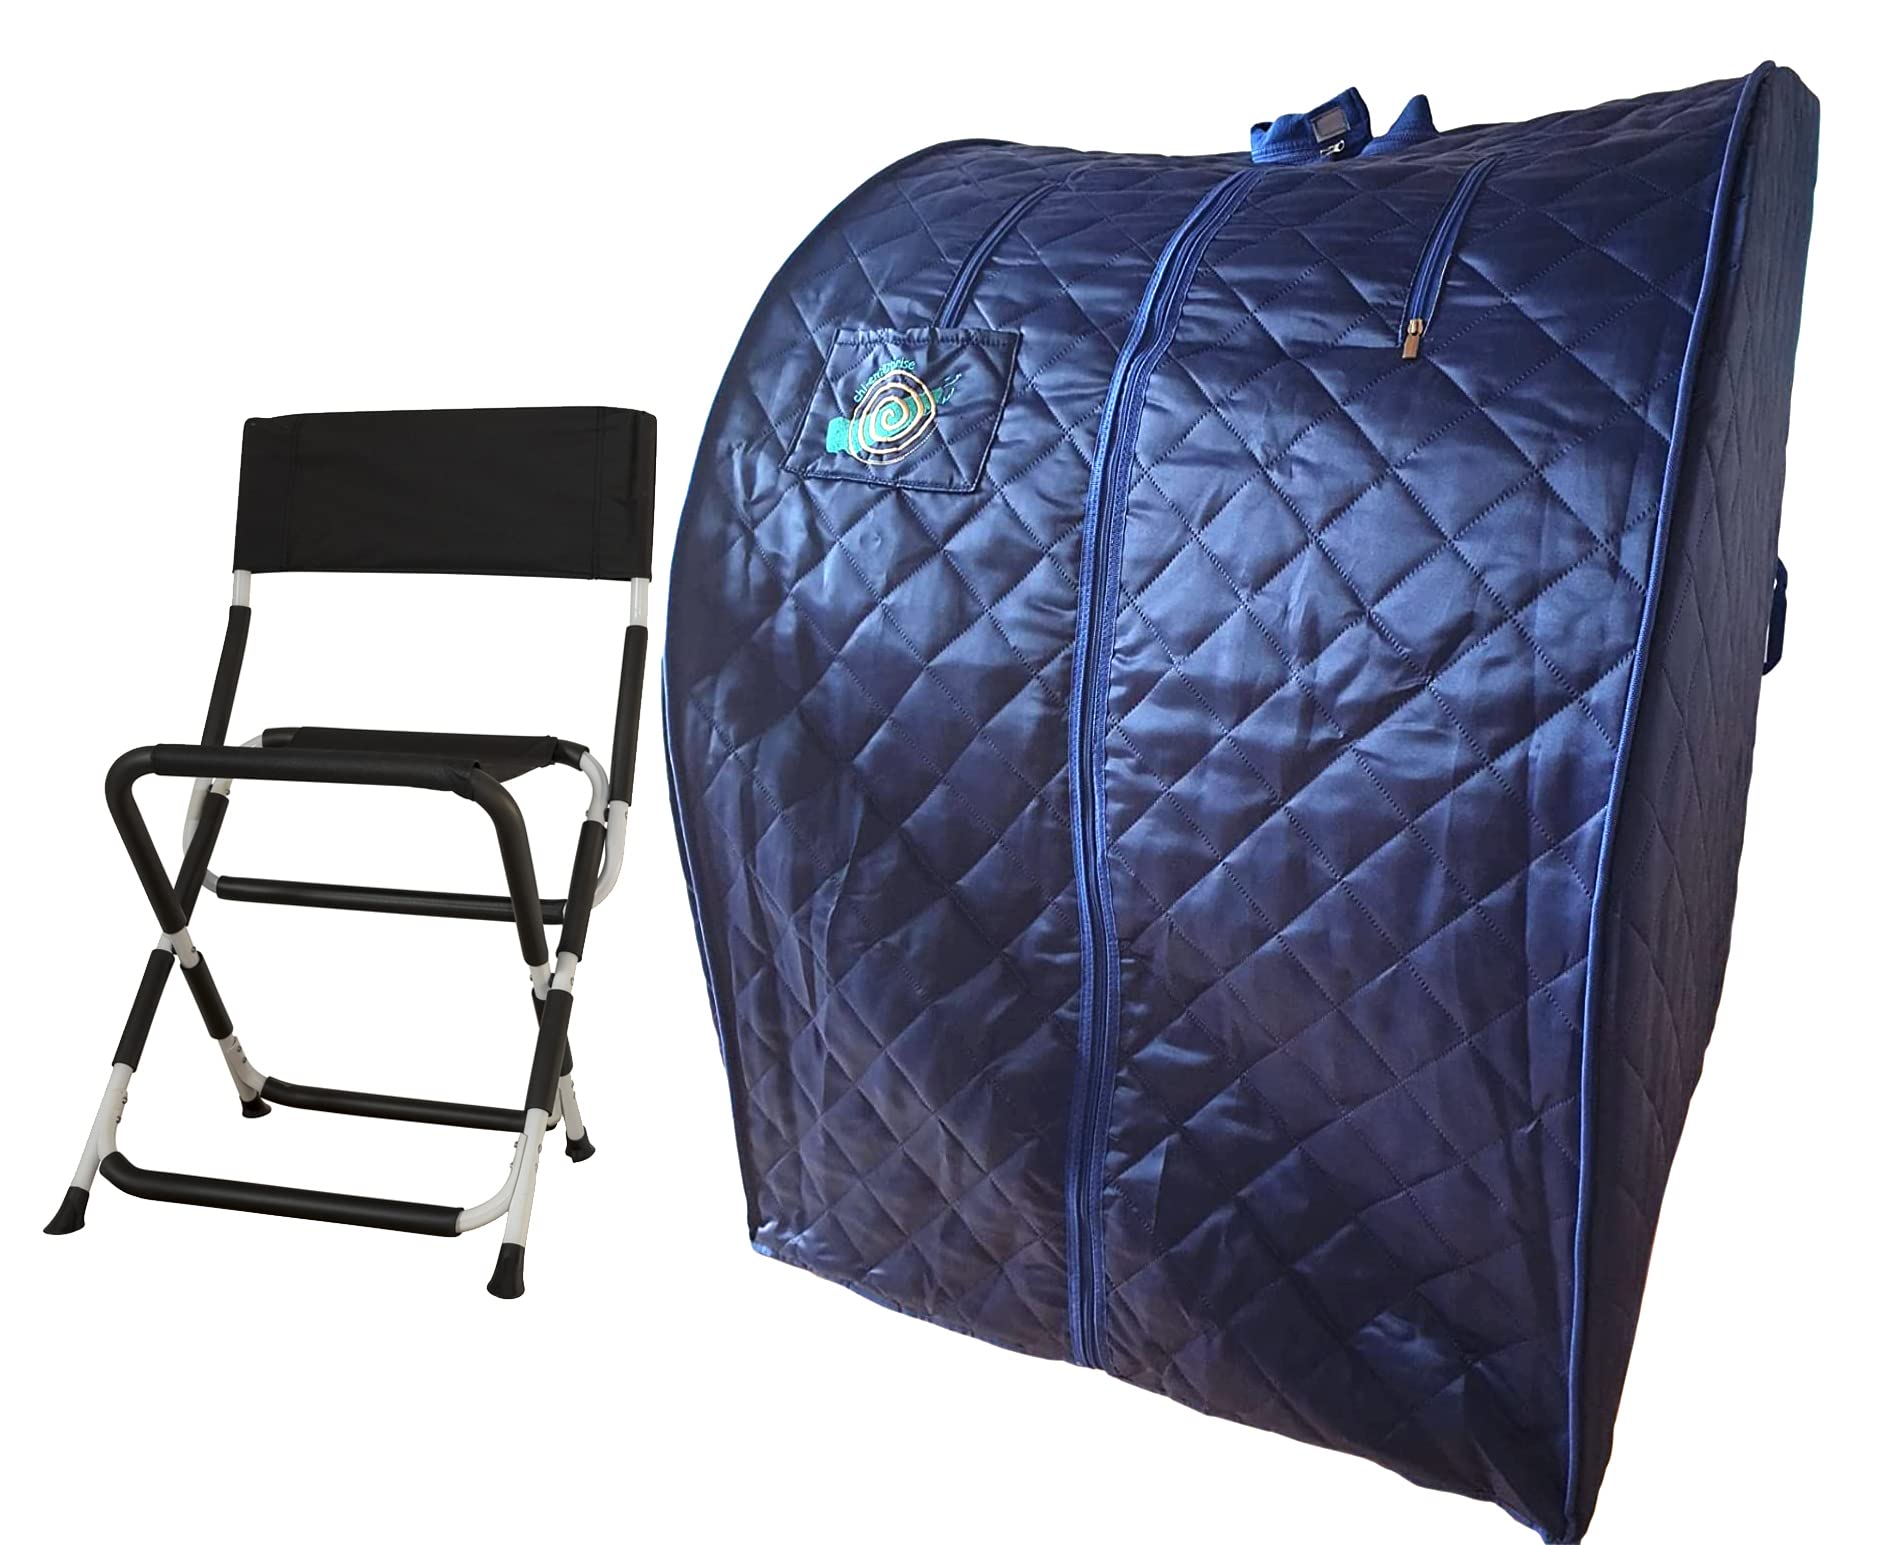 CHI-ENTERPISE - Turmalin-Infrarotsauna XL Deluxe in dunkelblau | Portable, Faltbare Sauna für eine Person inklusive Klappstuhl | 107x96x85 | 1000 Watt